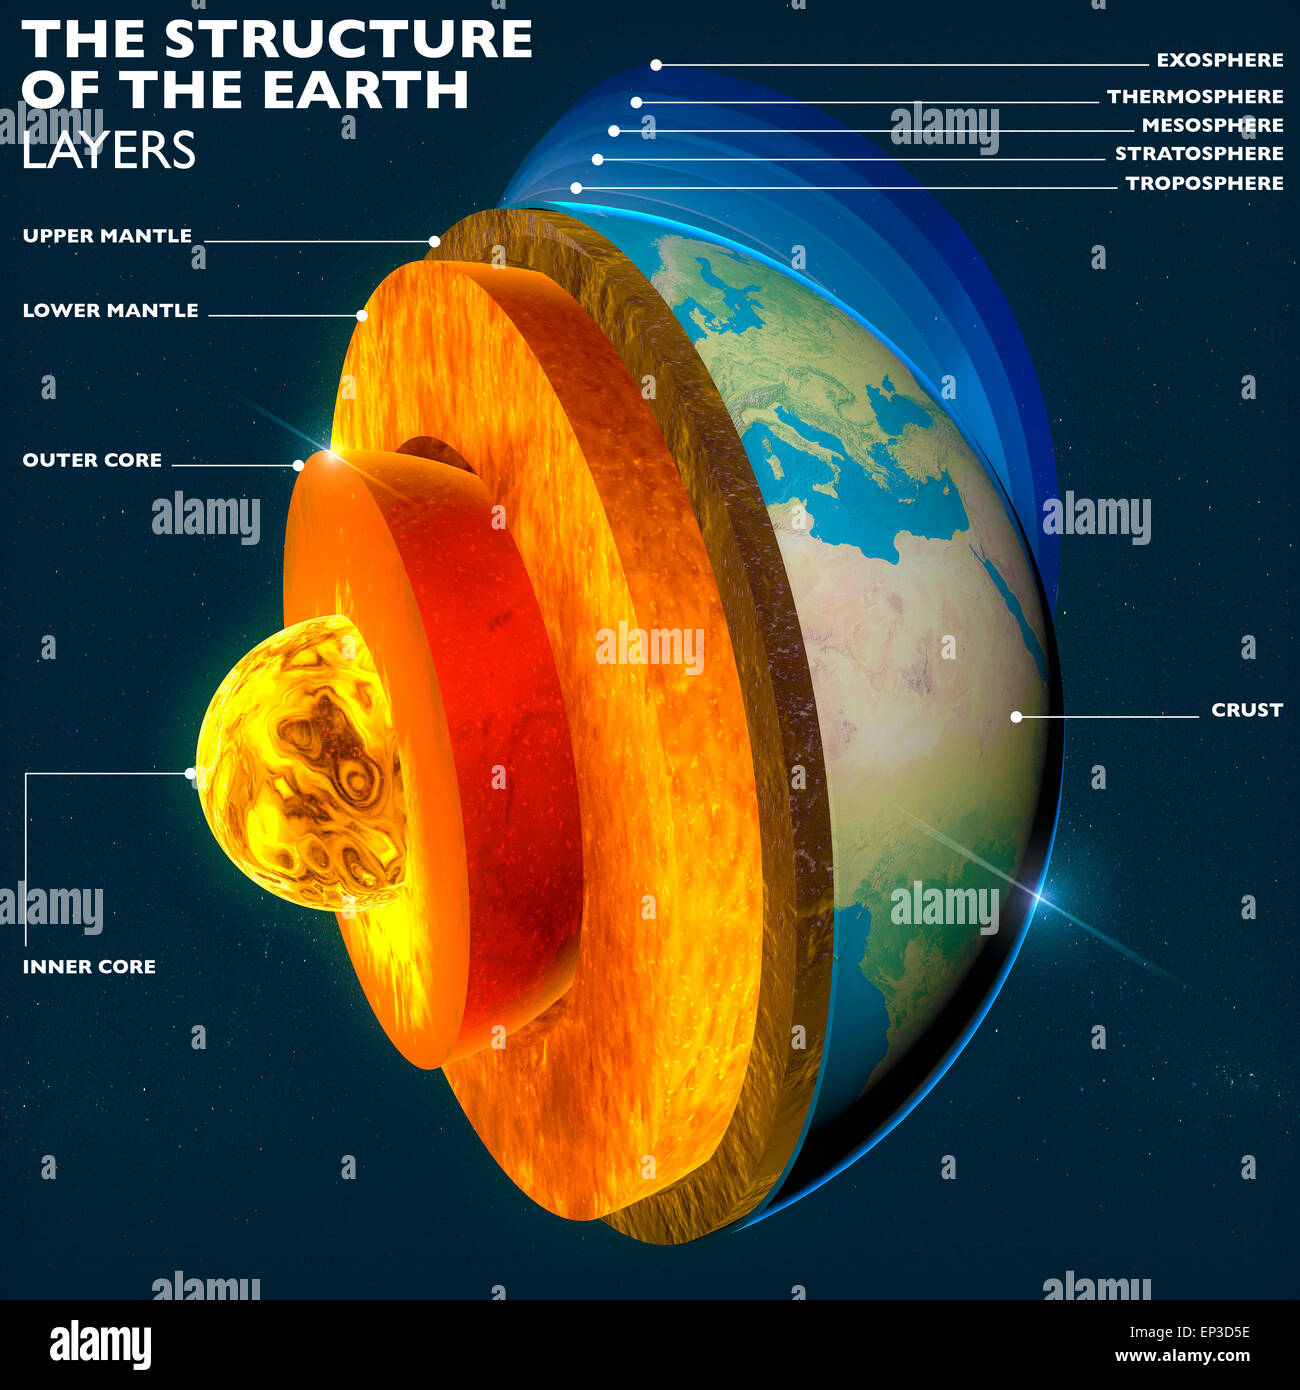 La Structure De La Terre Noyau De La Terre Section Couches Ciel Et Terre Split La Geophysique Elements De Cette Image Fournie Par La Nasa Ep3d5e 